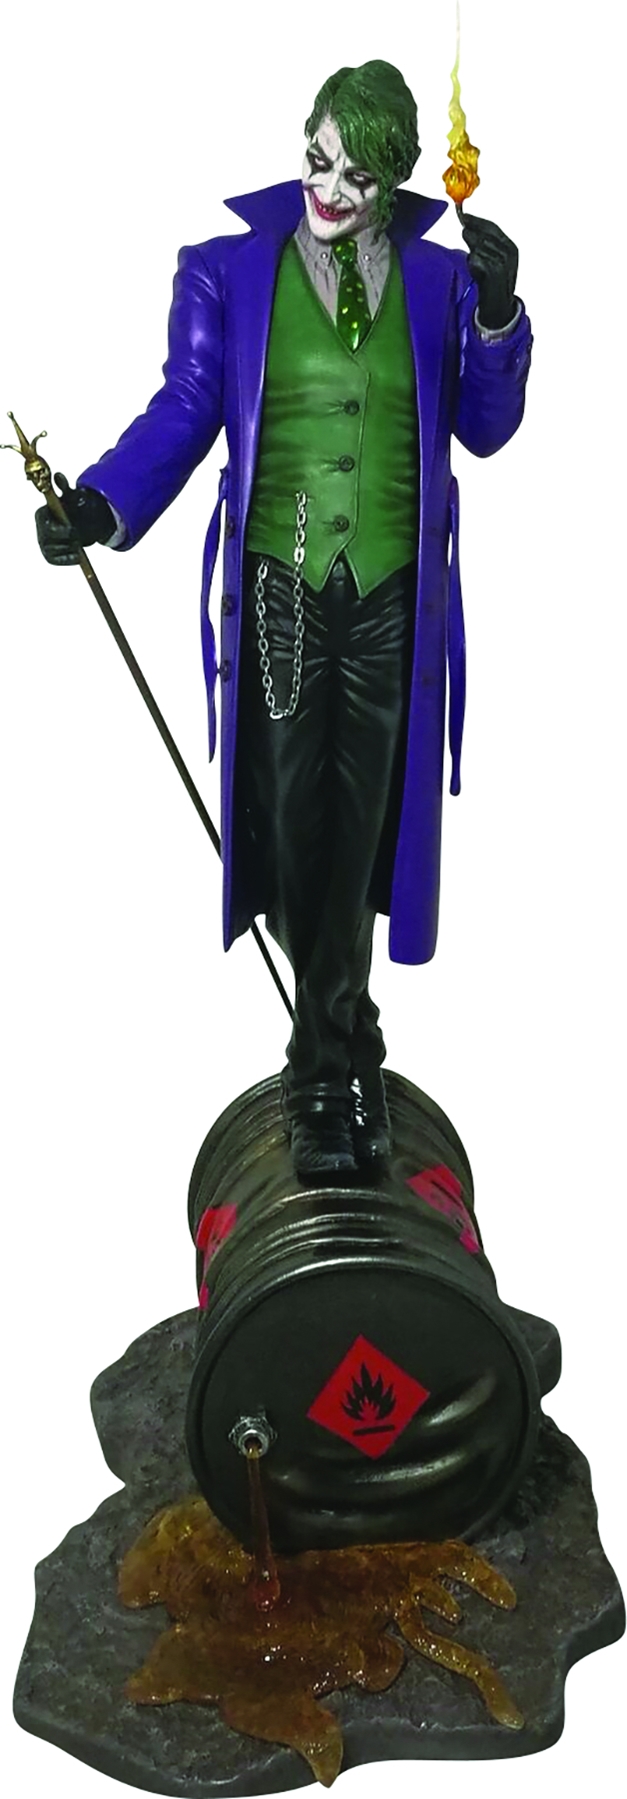 Стенд джокер 1.2. Статуя Джокера. Статуя смерти DC Comics. Джокер фигурка из Лиги. Фигурка Джокер и маленький человек в шляпе.